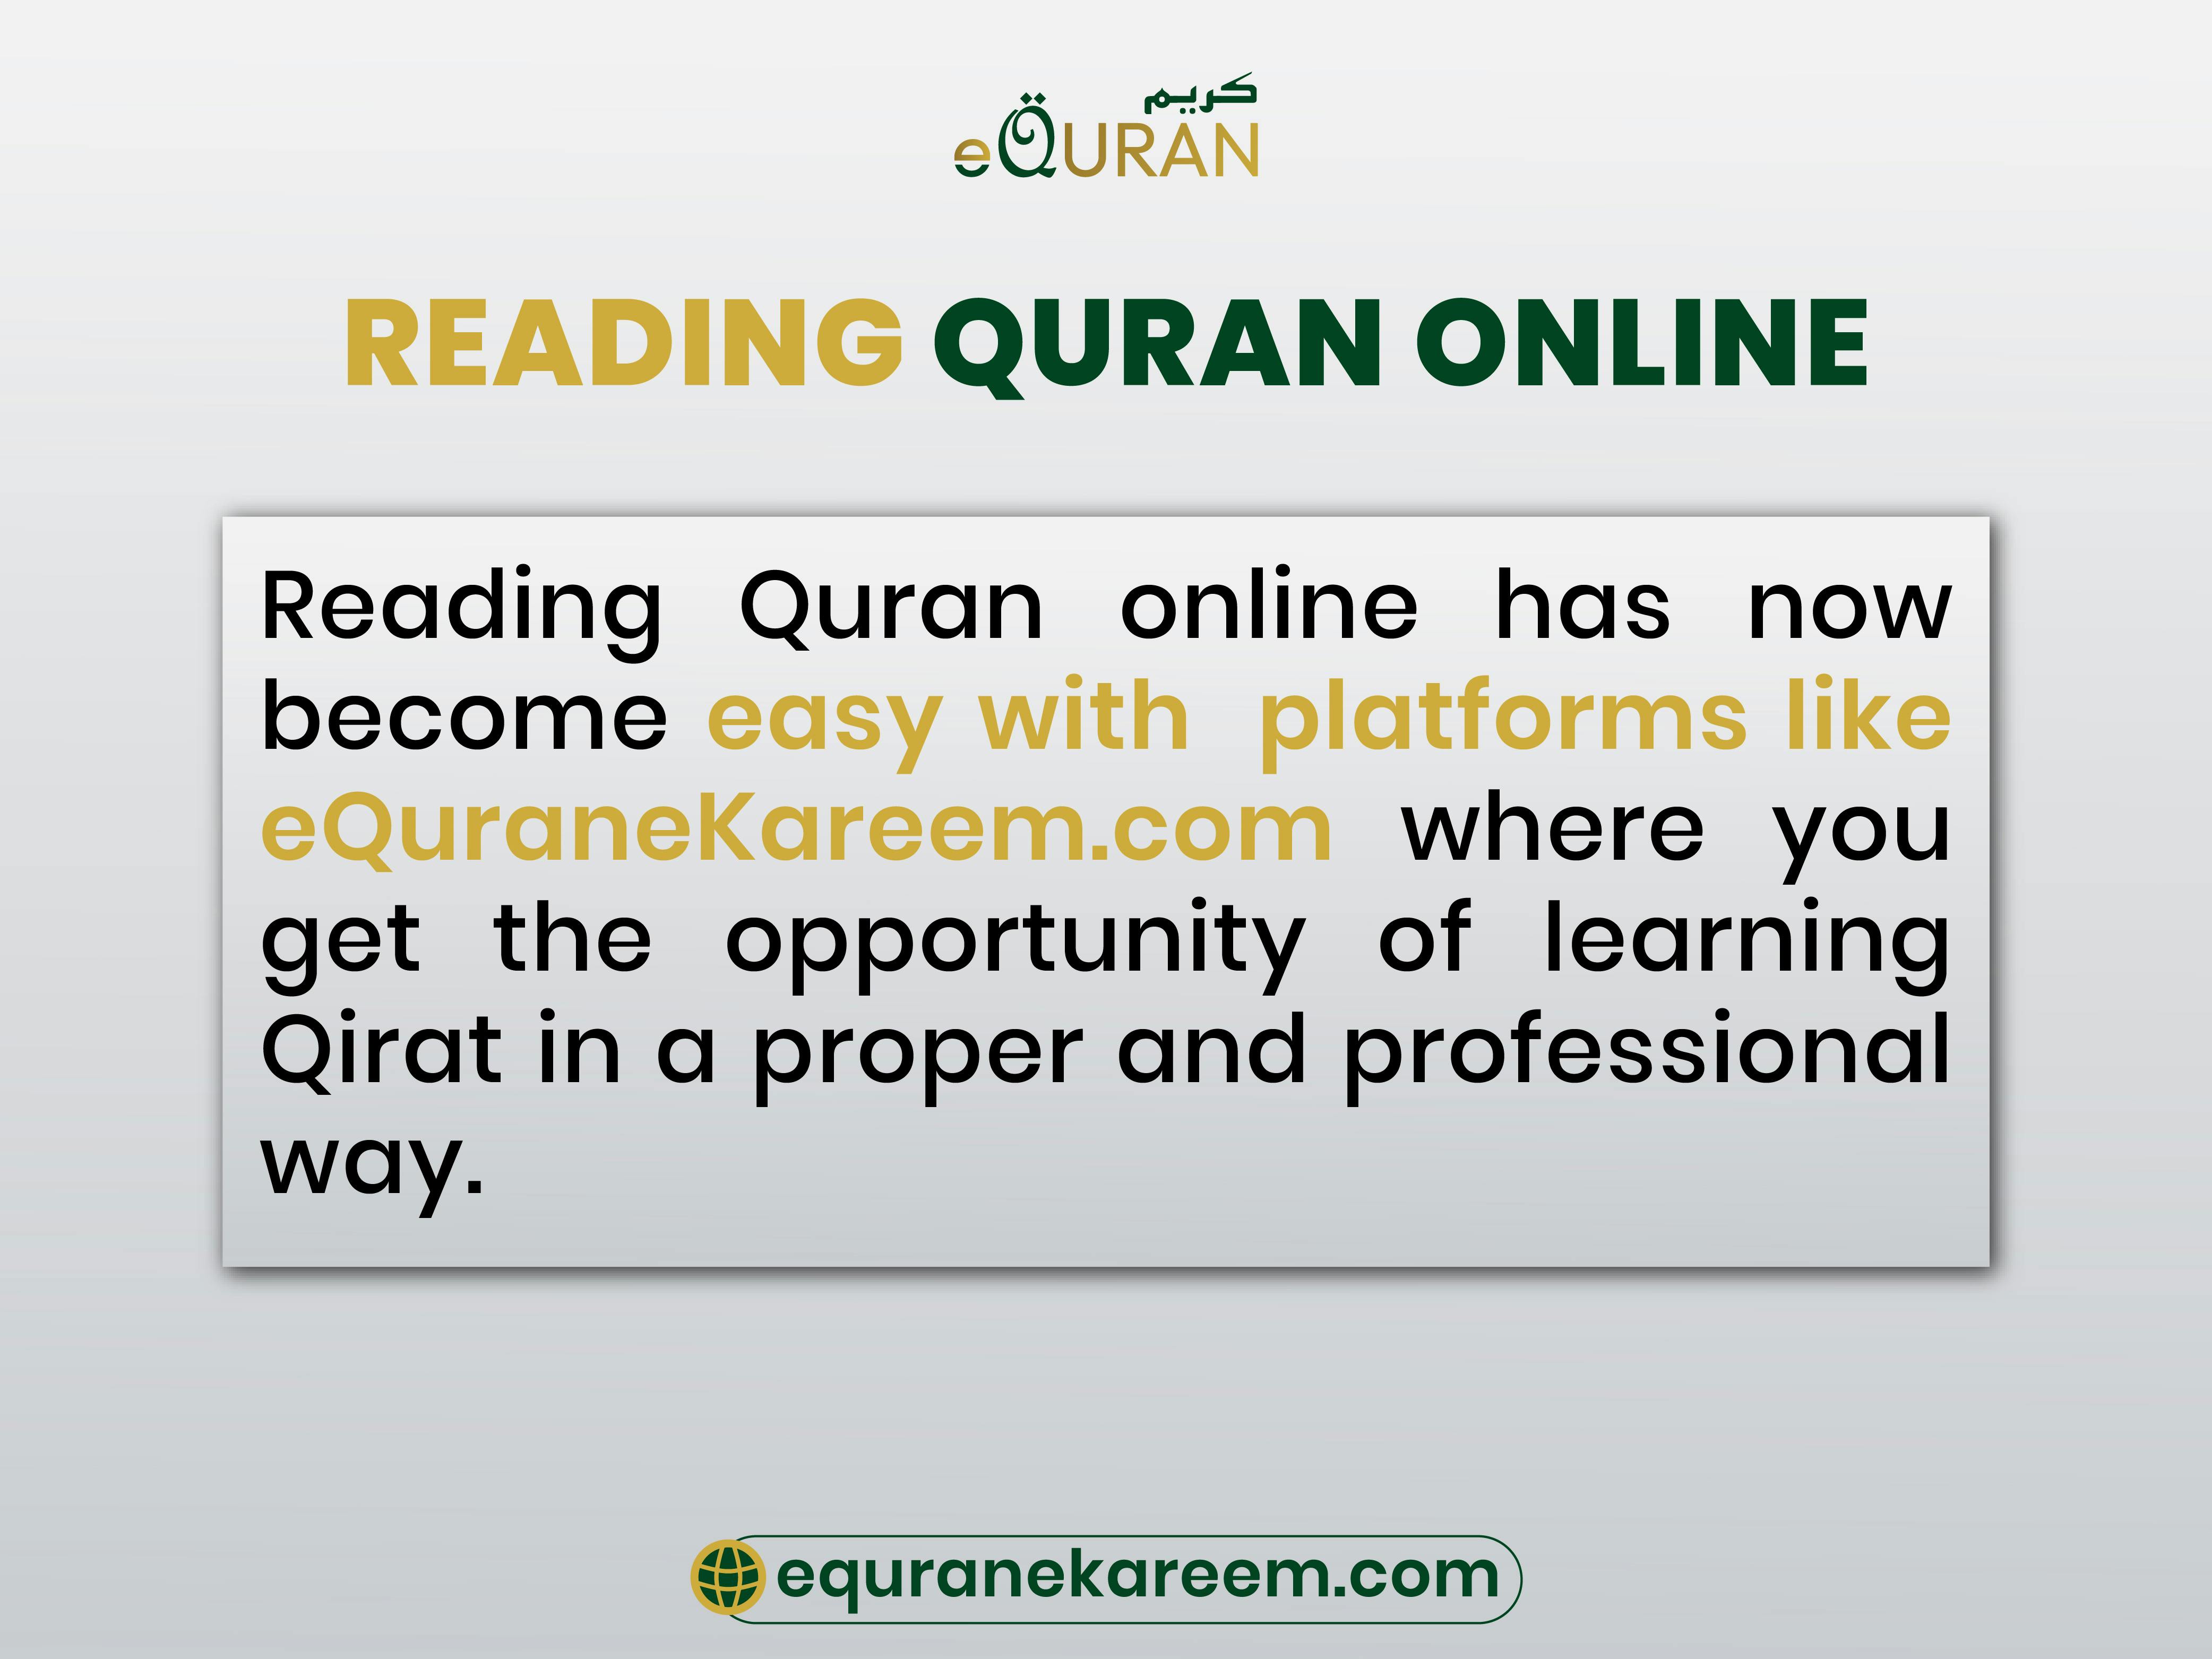 Learn quran online with tajweed eQuranekareem quran qirat classes with tajweed and translation